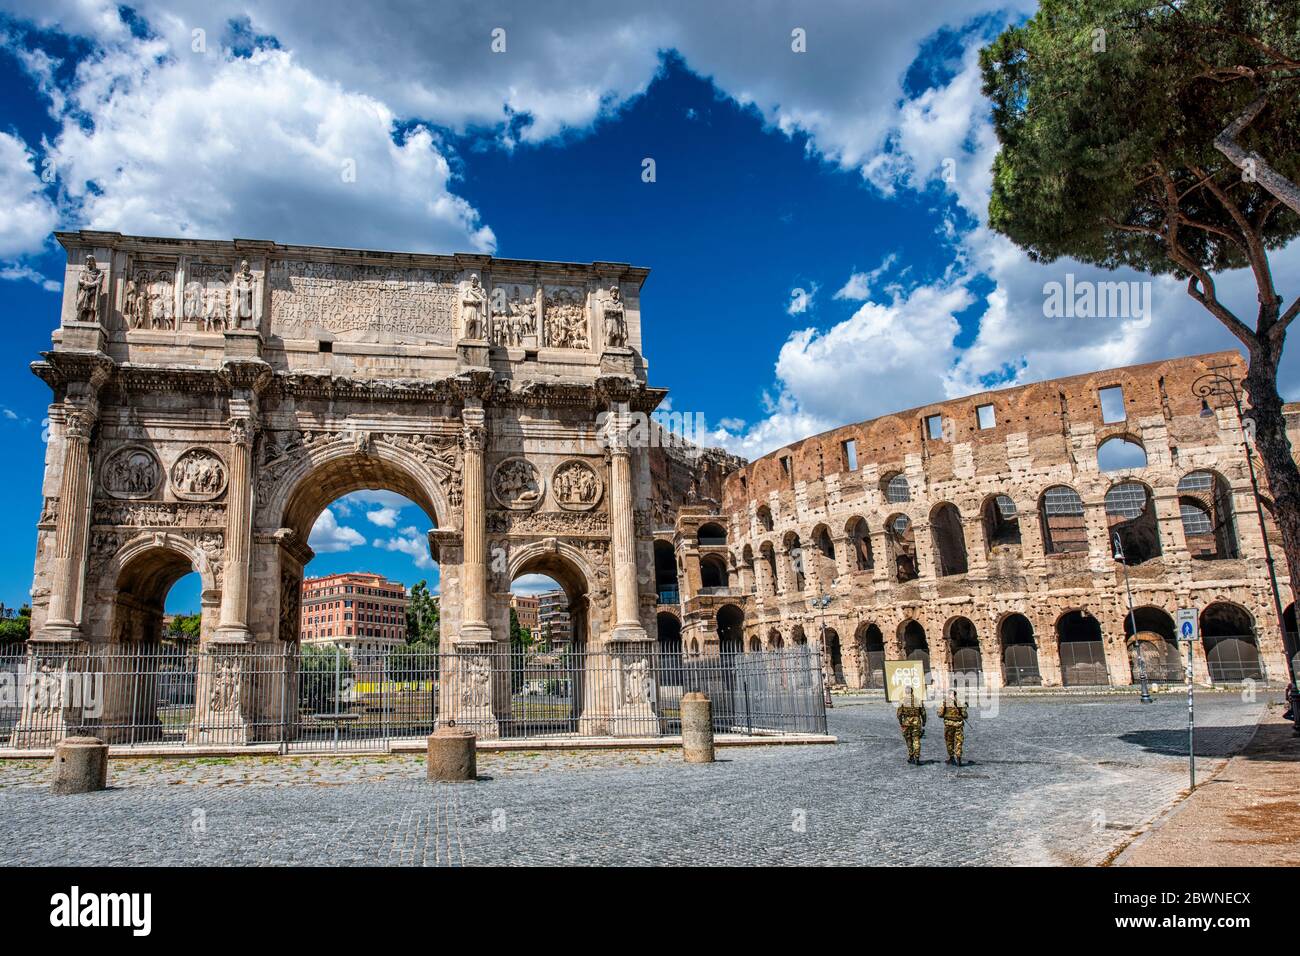 Italy Lazio Rome in lockdown: Arch of Constantine and Coliseum - Arco di Costantino e Colosseo Stock Photo